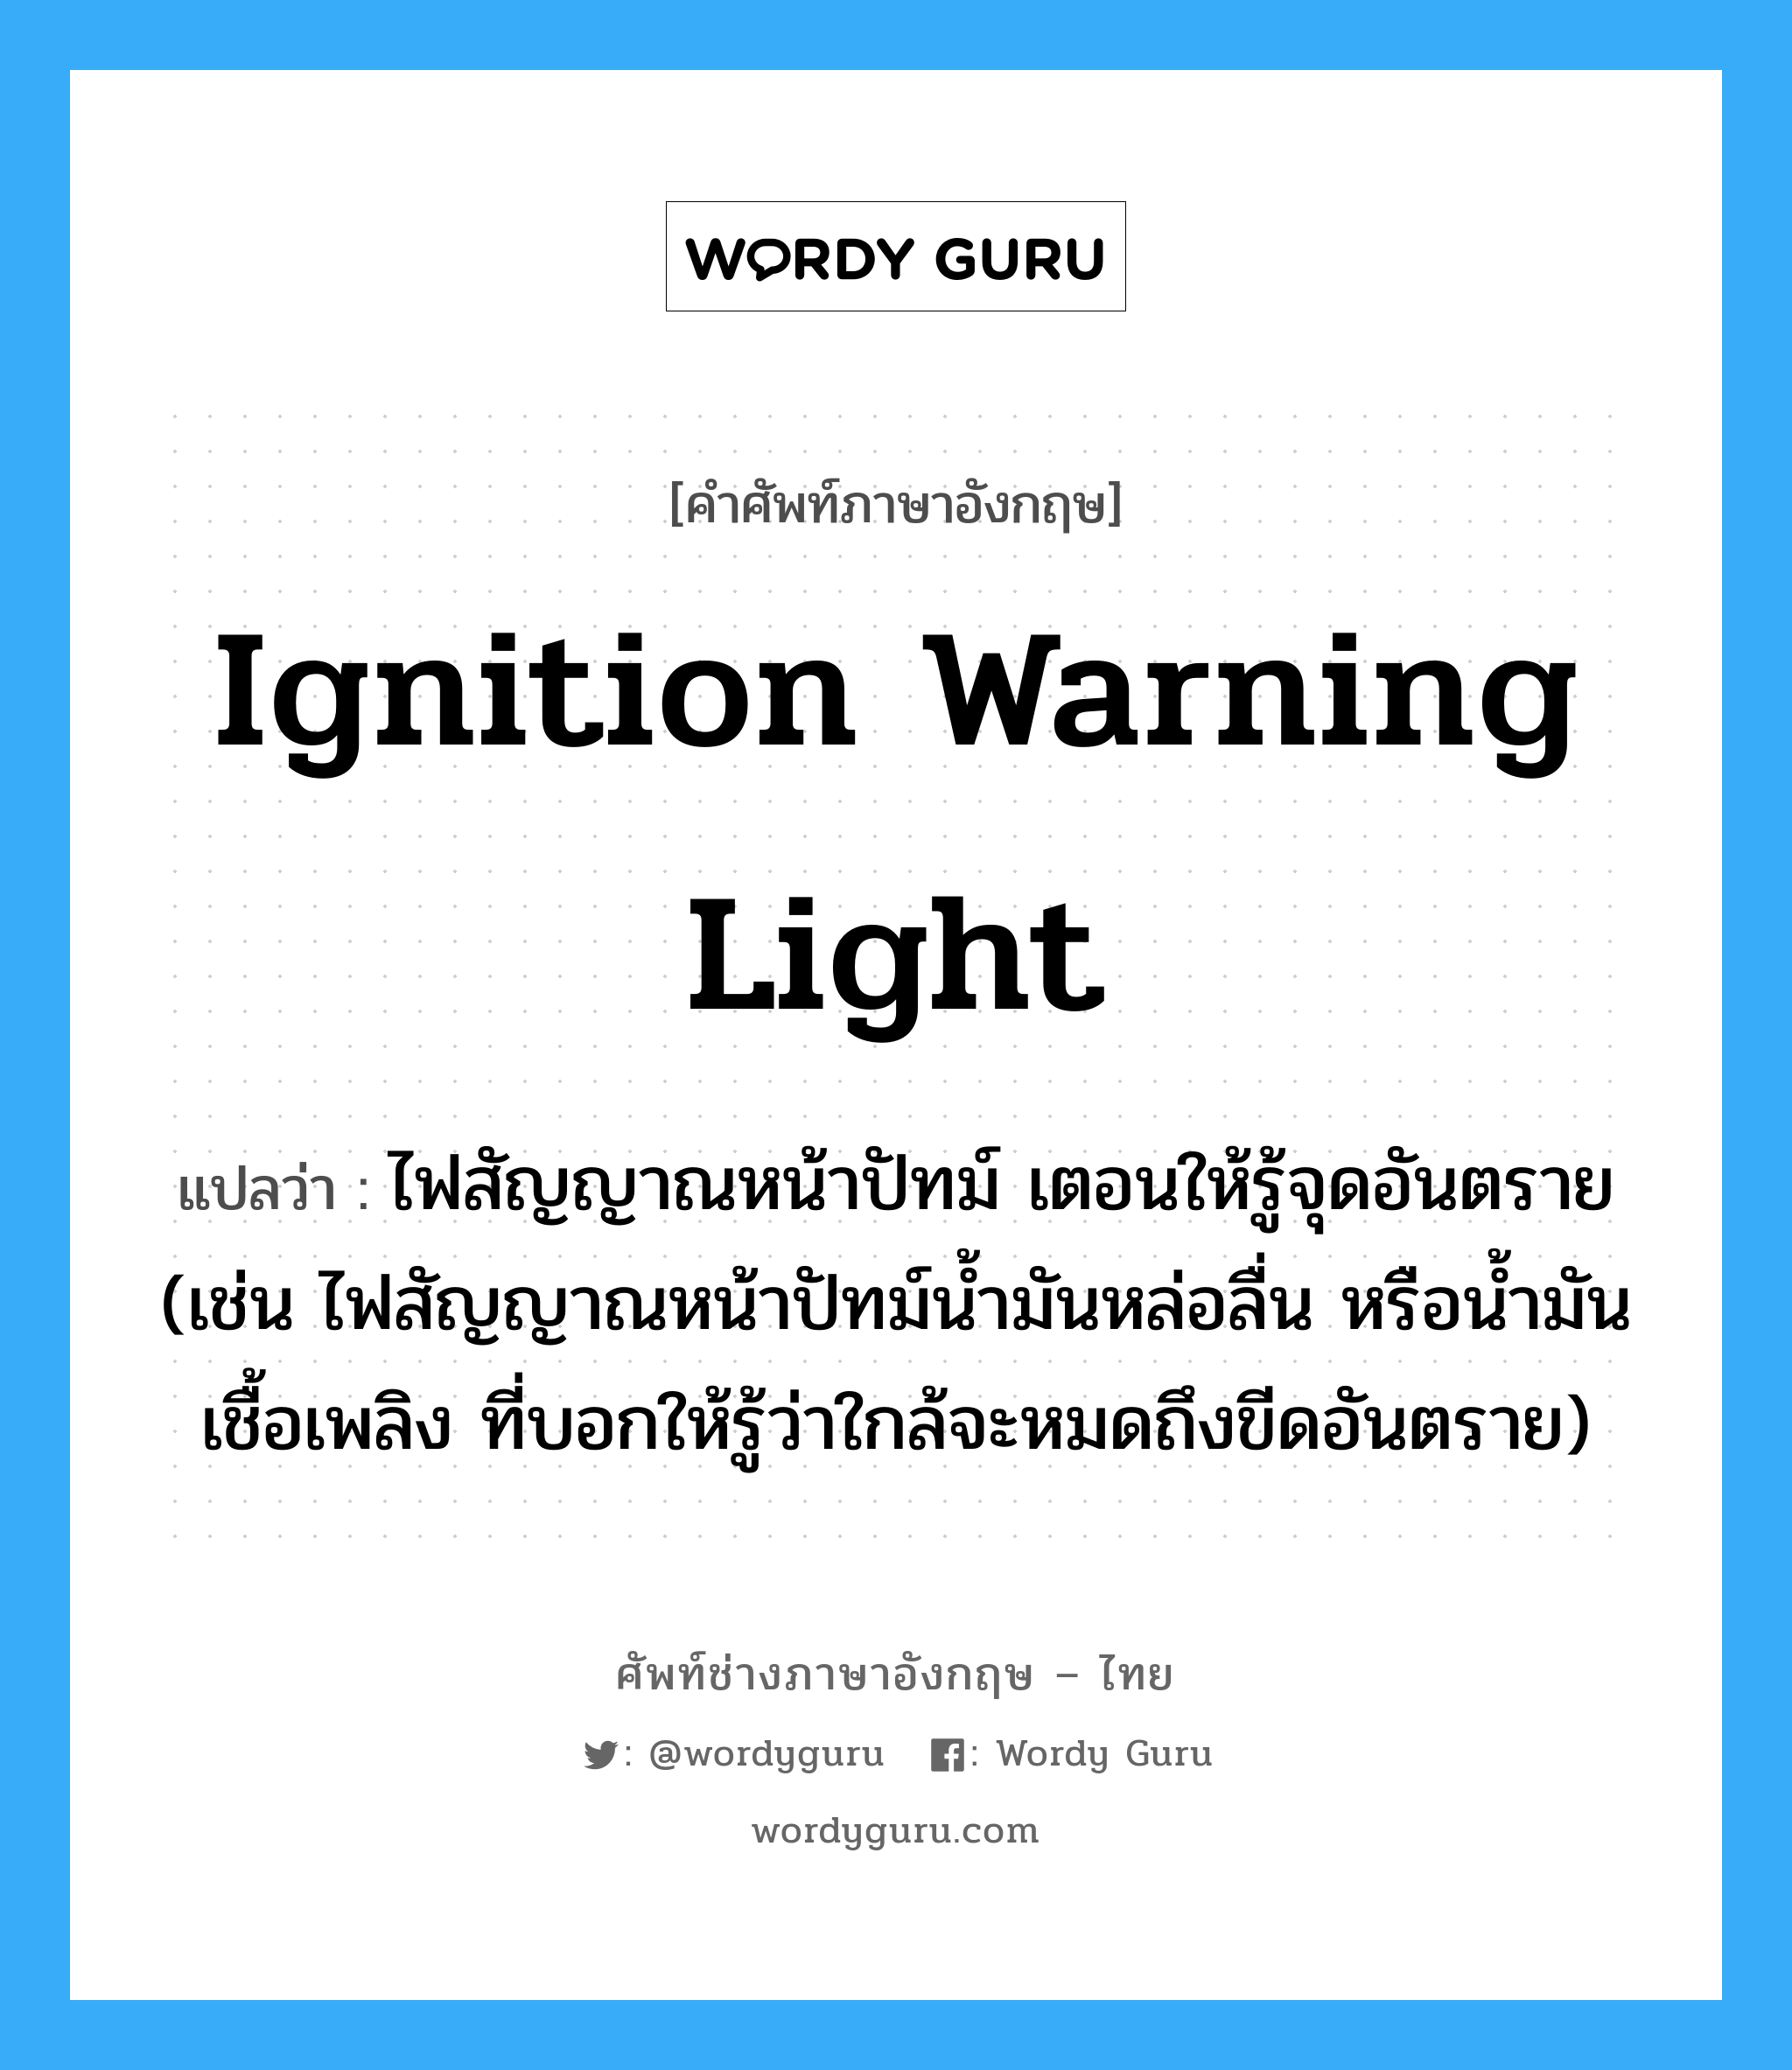 ignition warning light แปลว่า?, คำศัพท์ช่างภาษาอังกฤษ - ไทย ignition warning light คำศัพท์ภาษาอังกฤษ ignition warning light แปลว่า ไฟสัญญาณหน้าปัทม์ เตอนให้รู้จุดอันตราย (เช่น ไฟสัญญาณหน้าปัทม์น้ำมันหล่อลื่น หรือน้ำมันเชื้อเพลิง ที่บอกให้รู้ว่าใกล้จะหมดถึงขีดอันตราย)